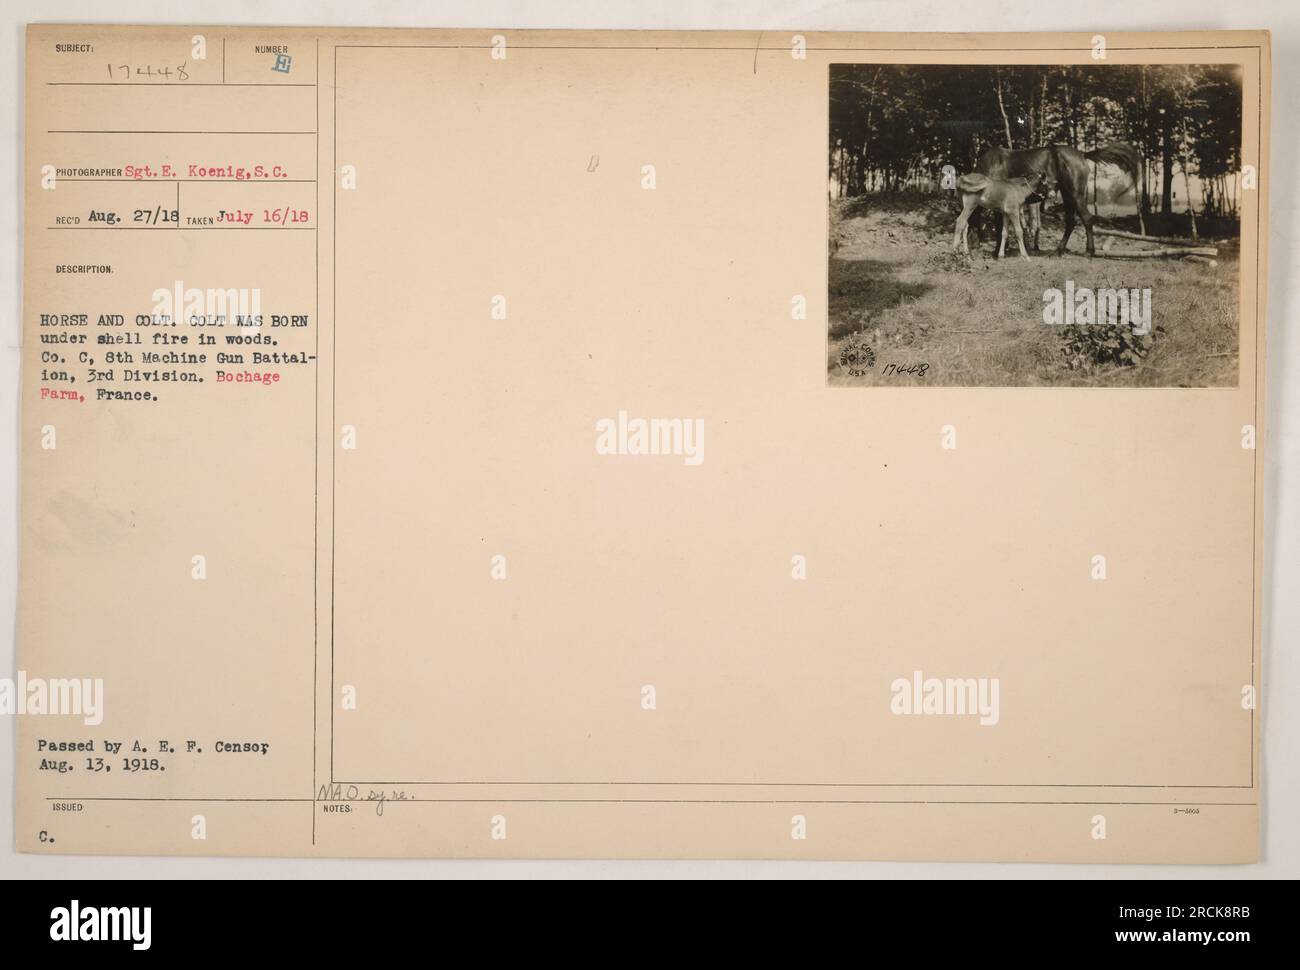 Ein Soldat aus Co C, 8. Maschinengewehrbataillon, 3. Division, posiert mit einem Pferd und seinem colt auf der Bochage Farm in Frankreich. Der colt wurde unter Patronenfeuer im Wald geboren. Dieses Foto wurde am 16. Juli 1918 von Sergeant E. Koenig aufgenommen. Stockfoto